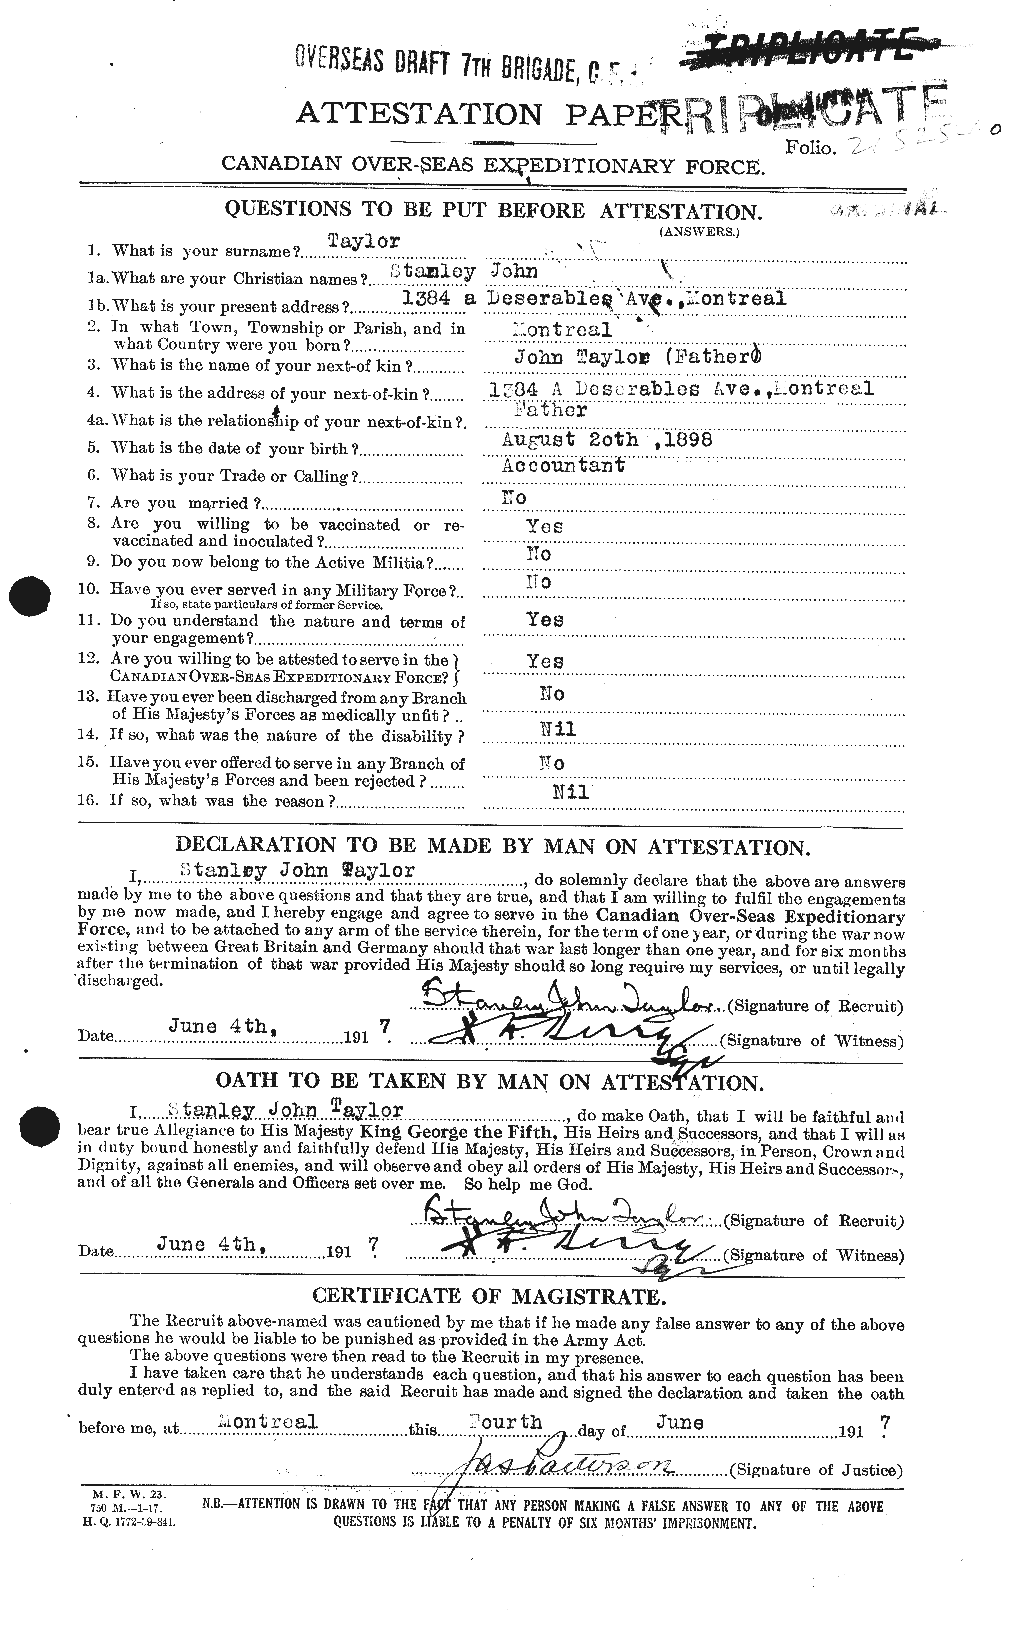 Dossiers du Personnel de la Première Guerre mondiale - CEC 627924a